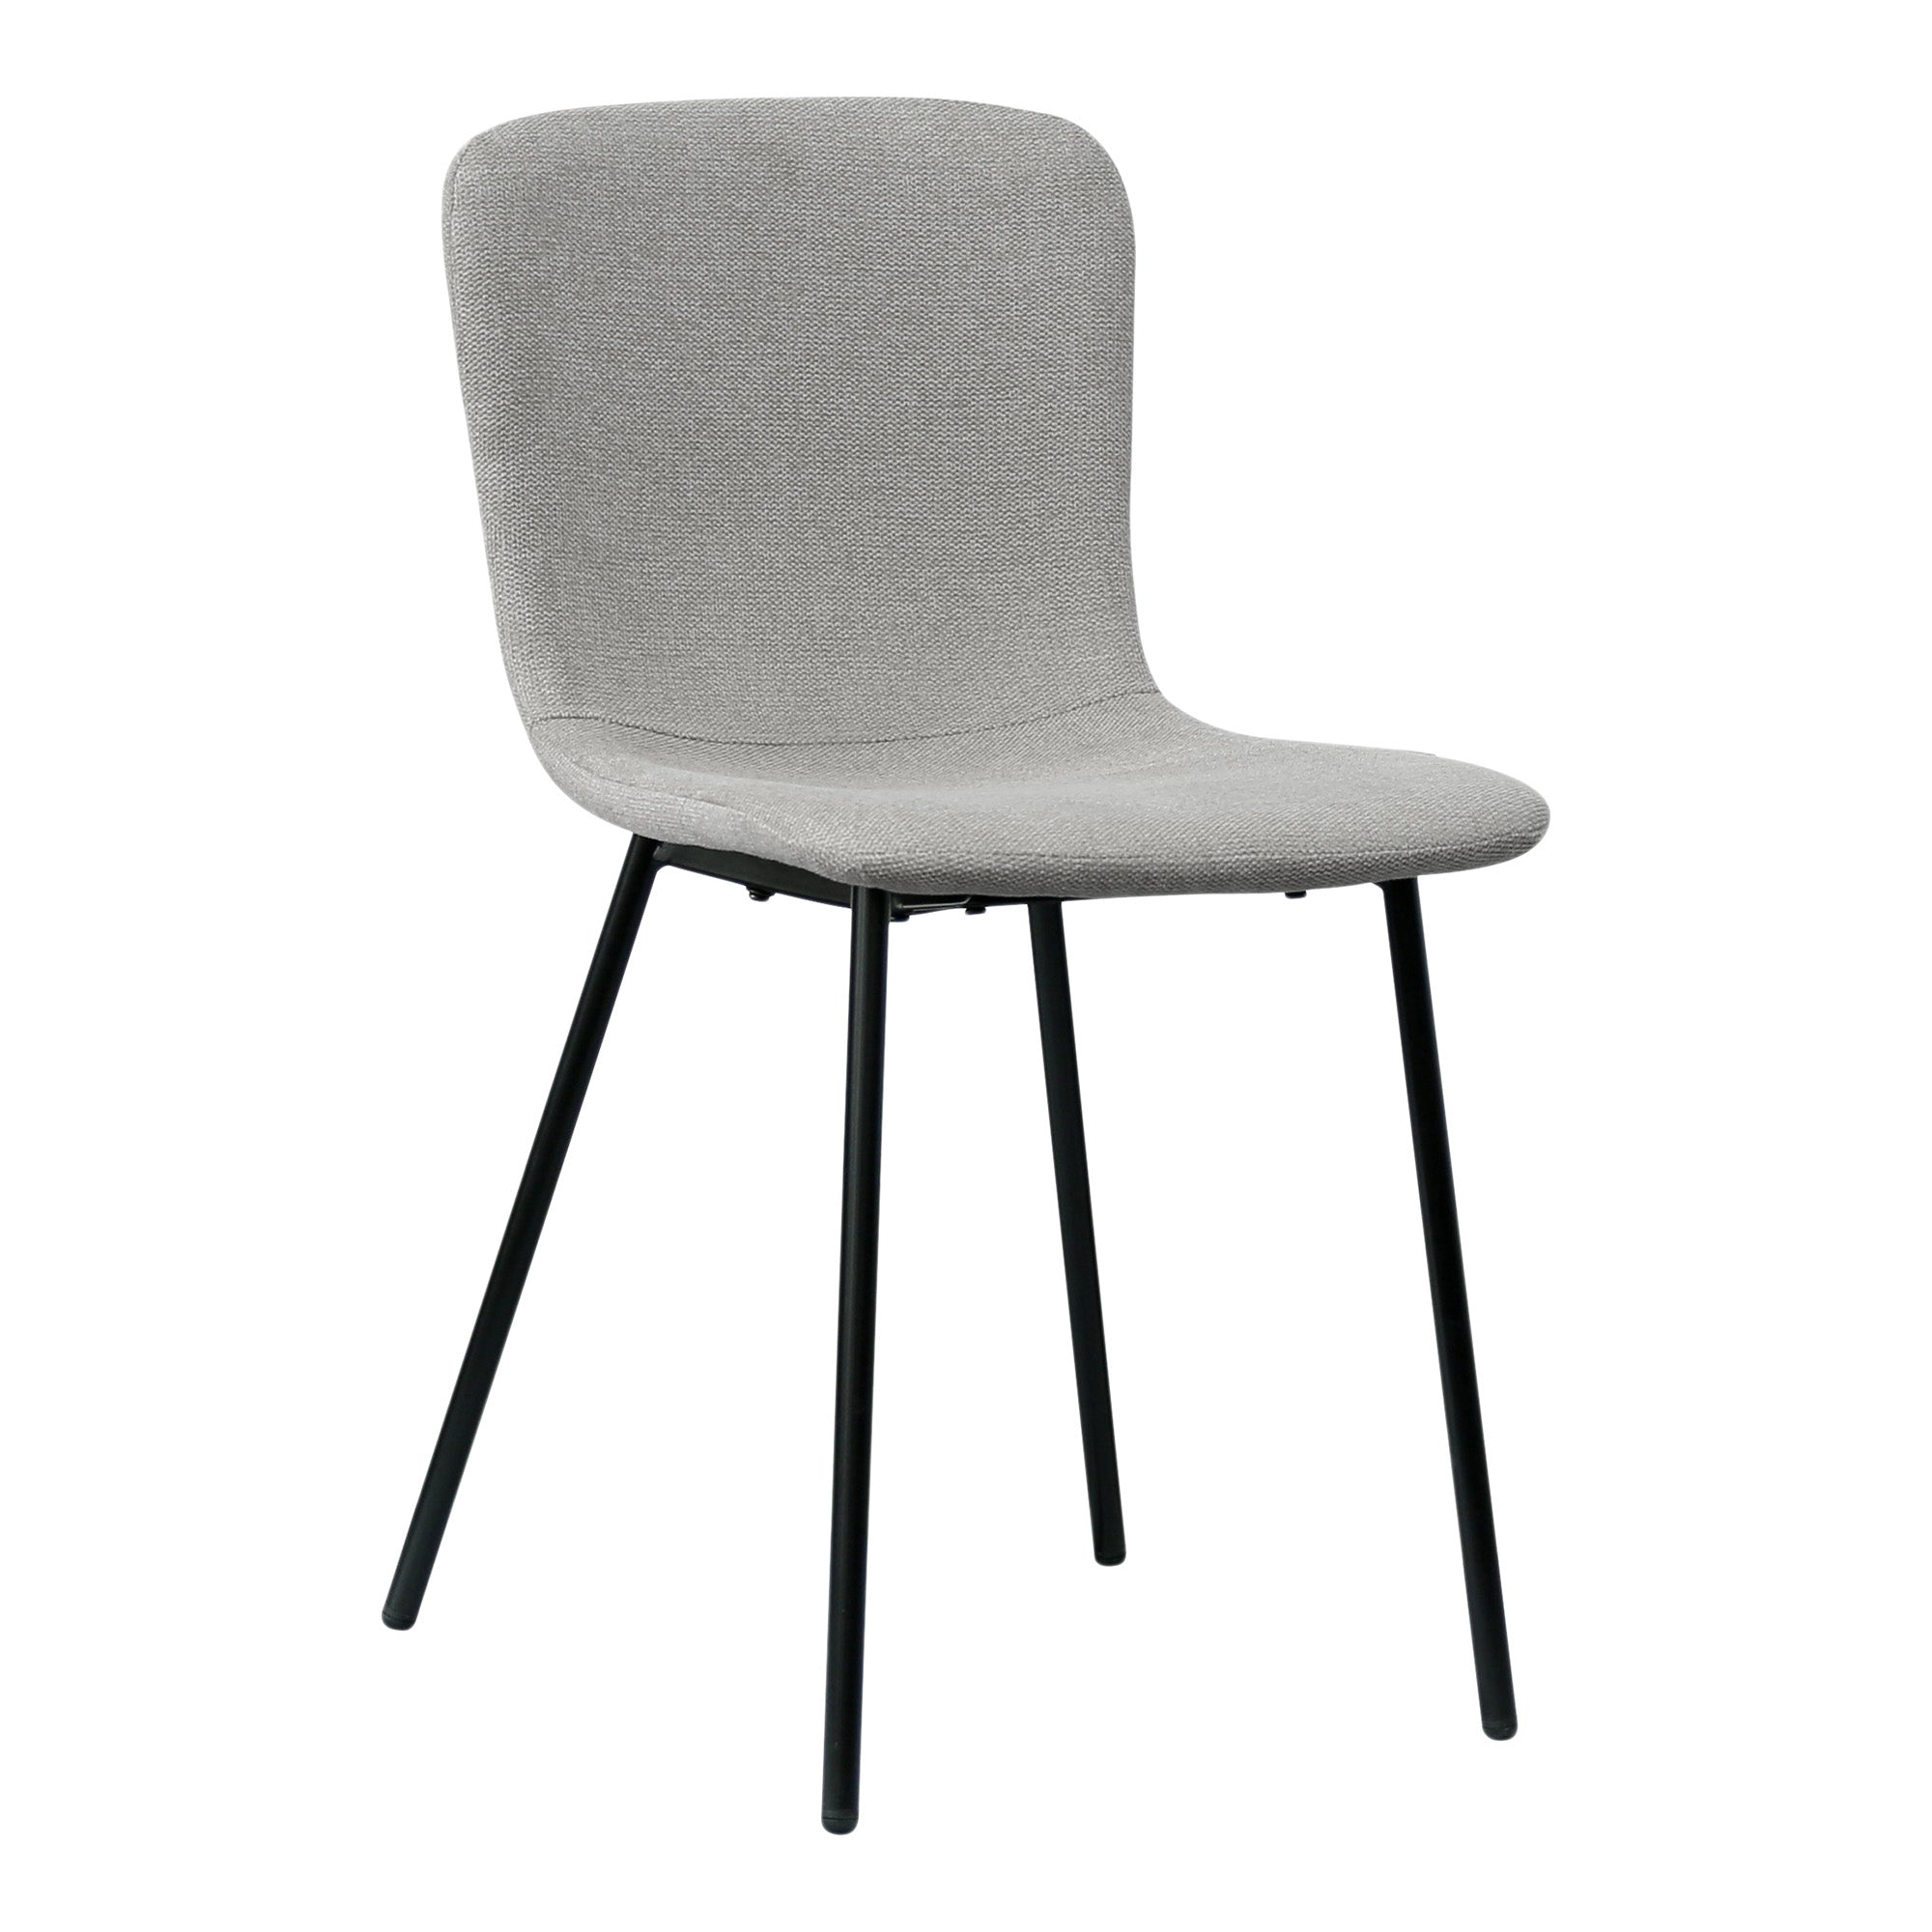 Halden Spisebordsstol - Spisebordsstol, Lysegrå Med Sorte Ben, Hn1275 ⎮ Sæt af 2 stk. ⎮ 5713917025275 ⎮ 1001106 